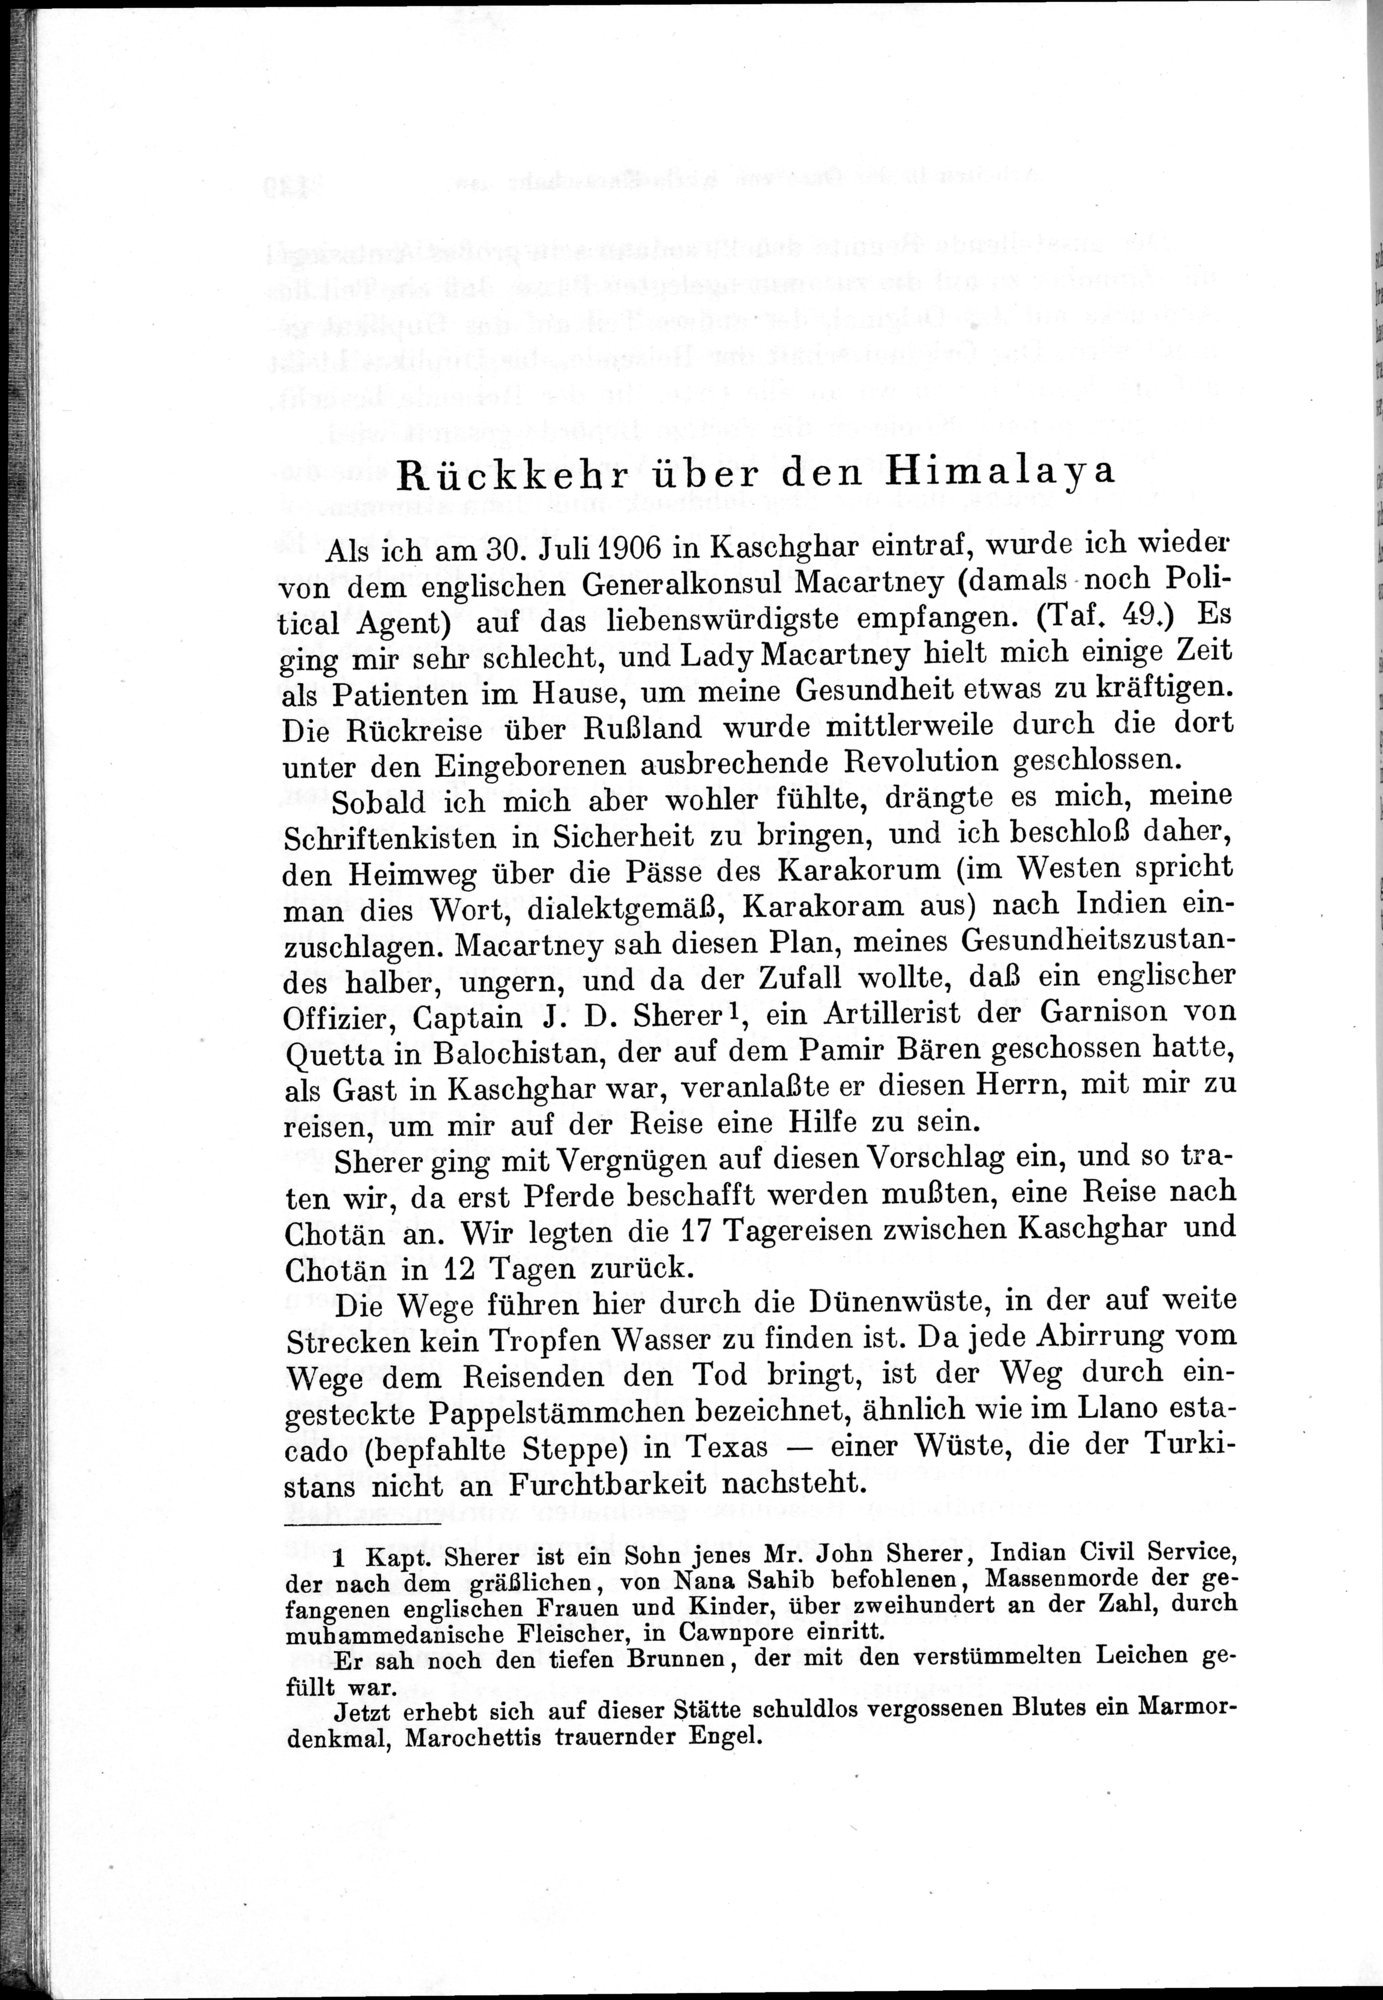 Auf Hellas Spuren in Ostturkistan : vol.1 / Page 202 (Grayscale High Resolution Image)